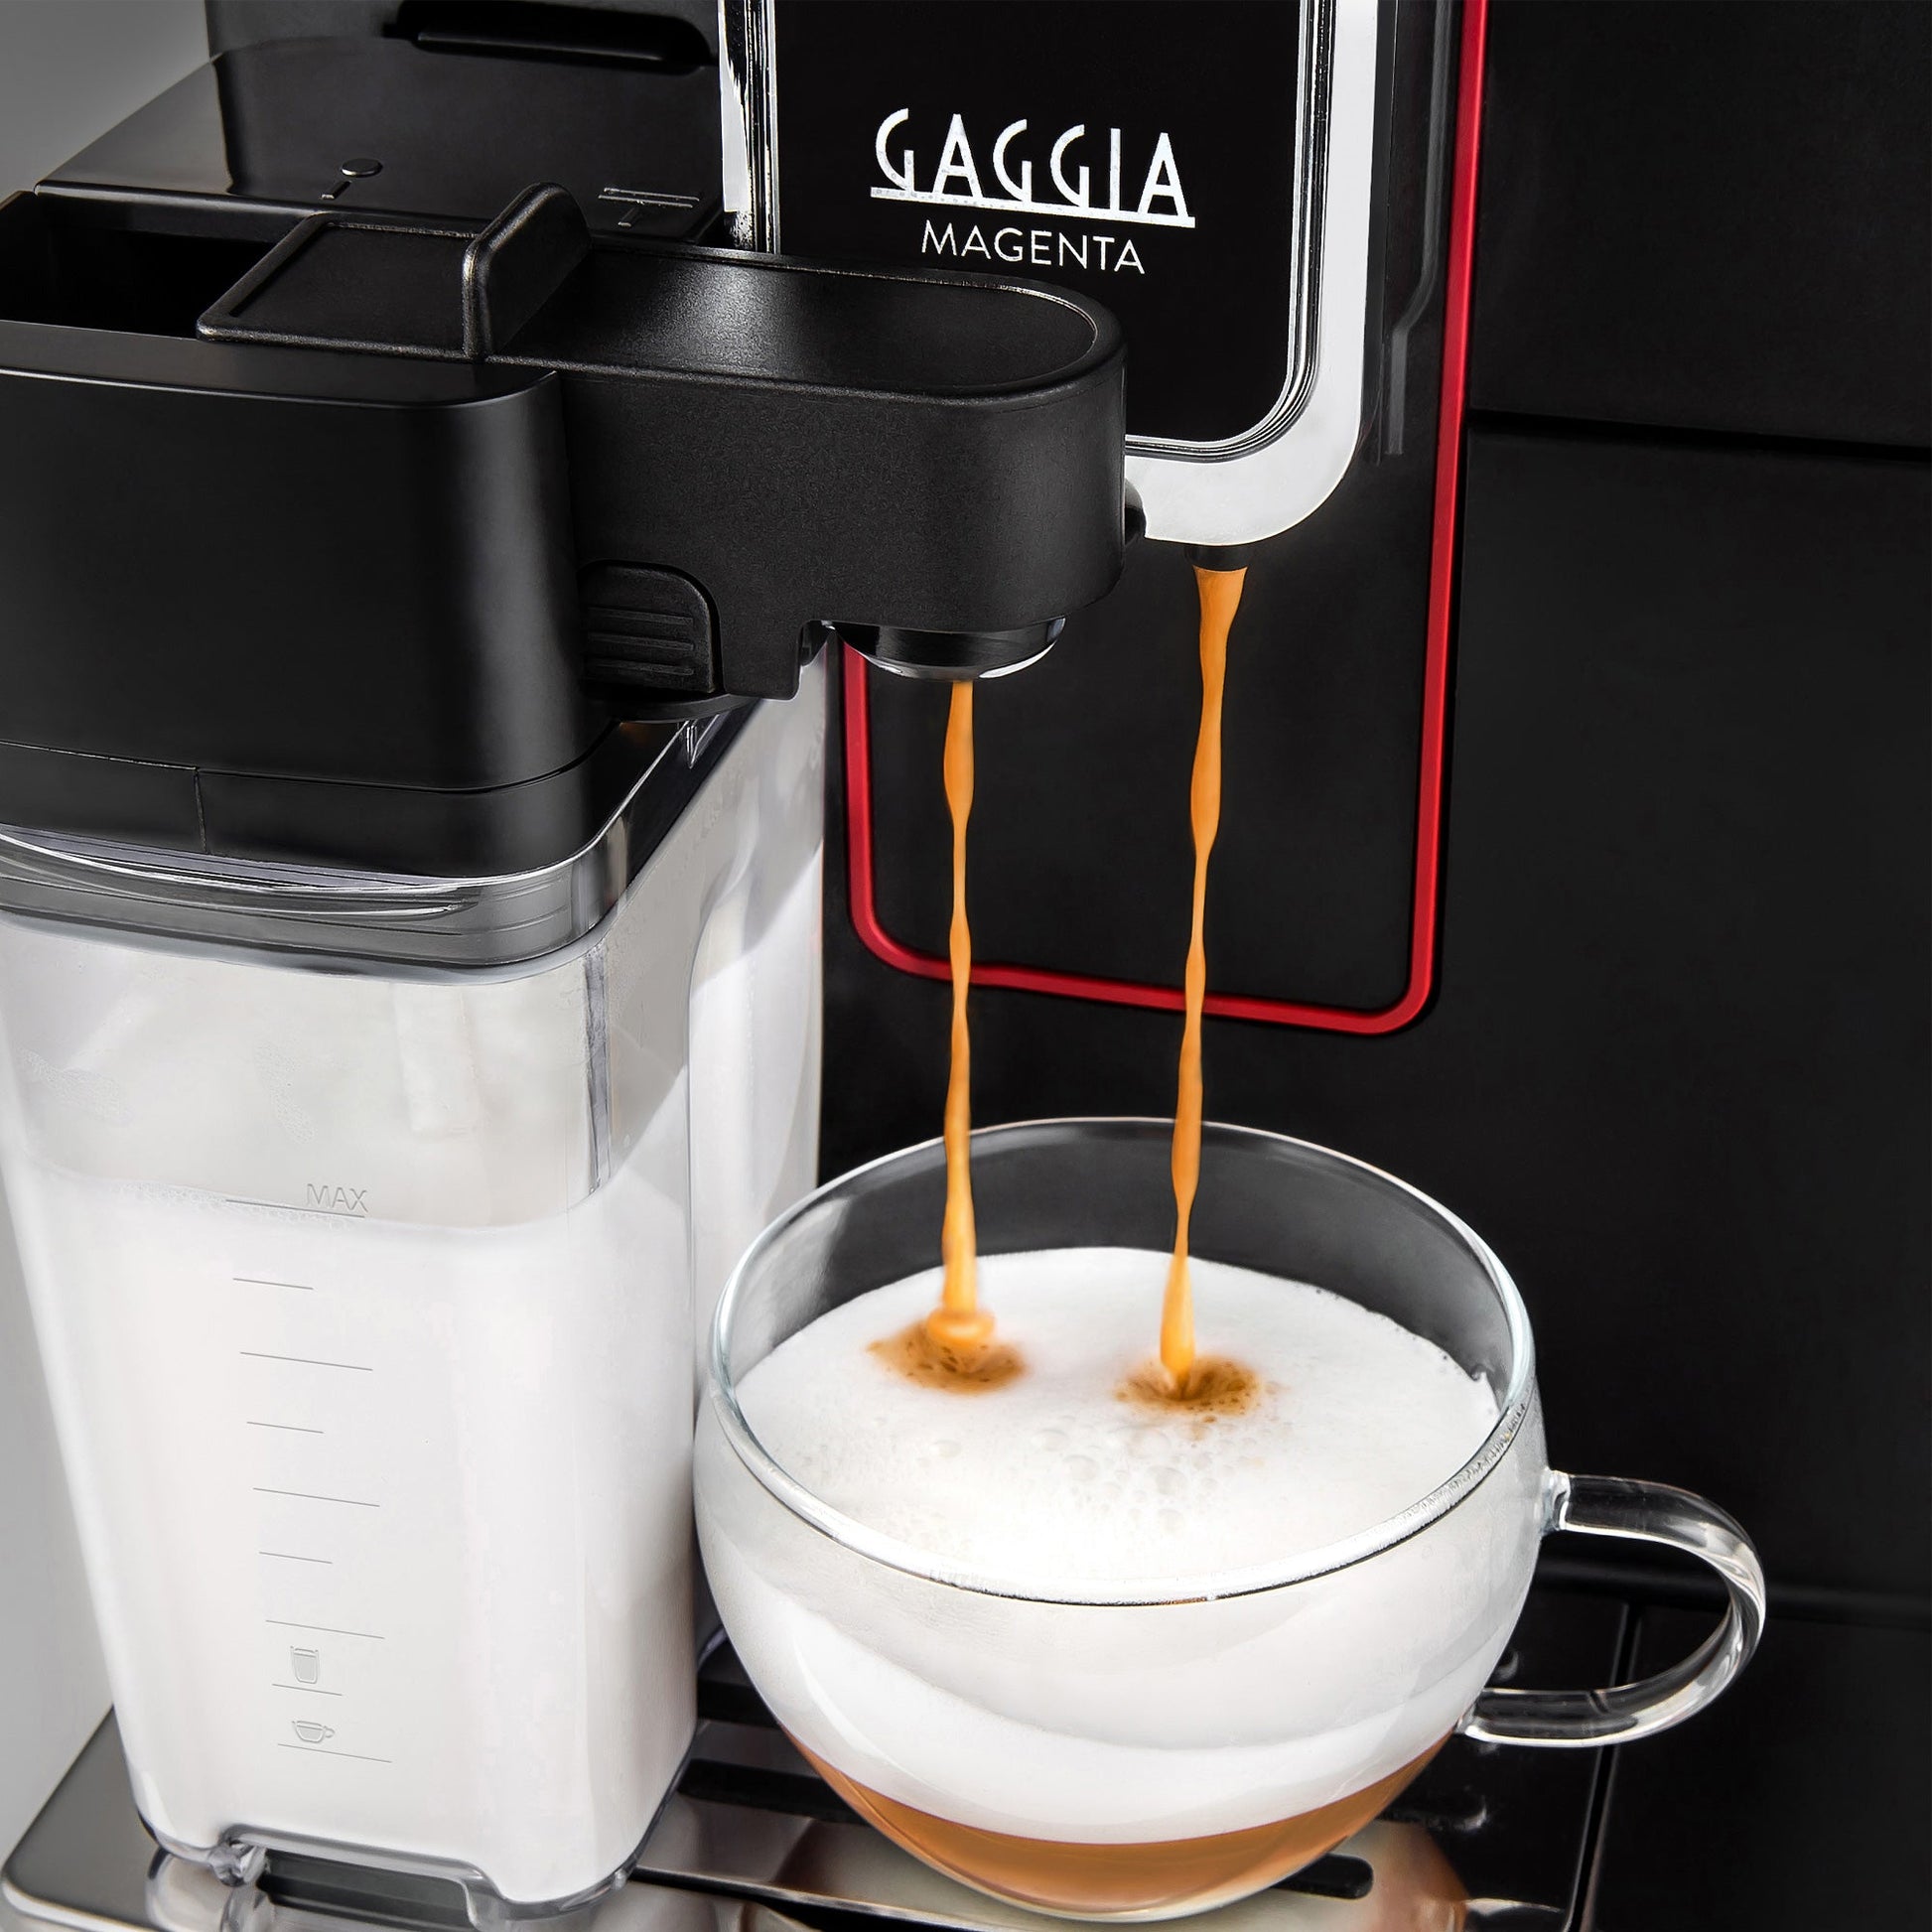 Cafeteras Espresso Superautomáticas